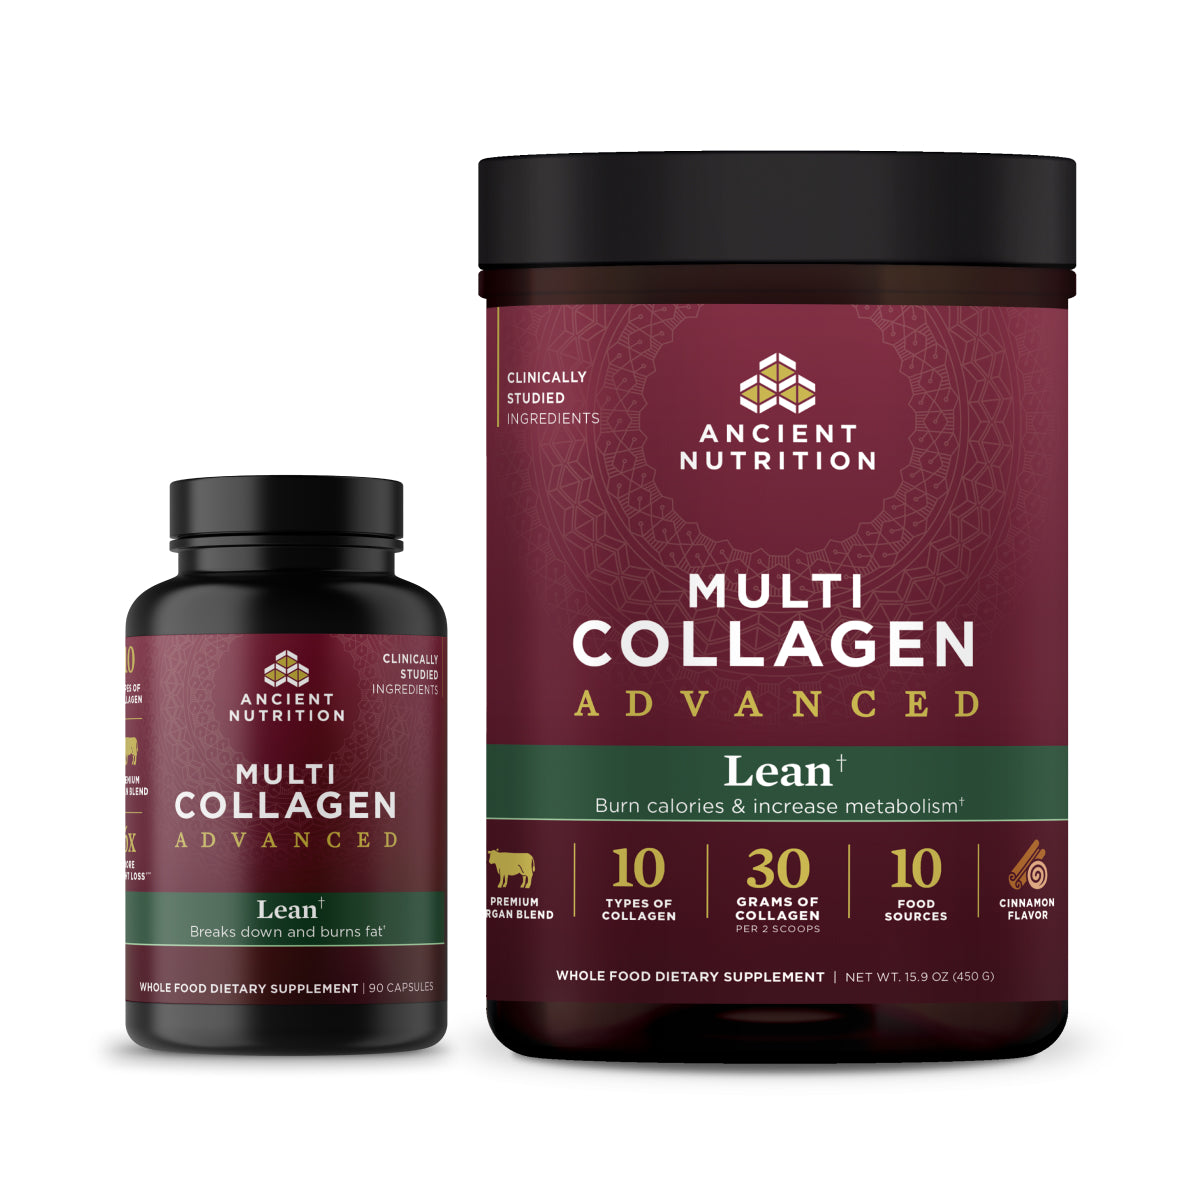 Multi Collagen Advanced Lean† Bundle